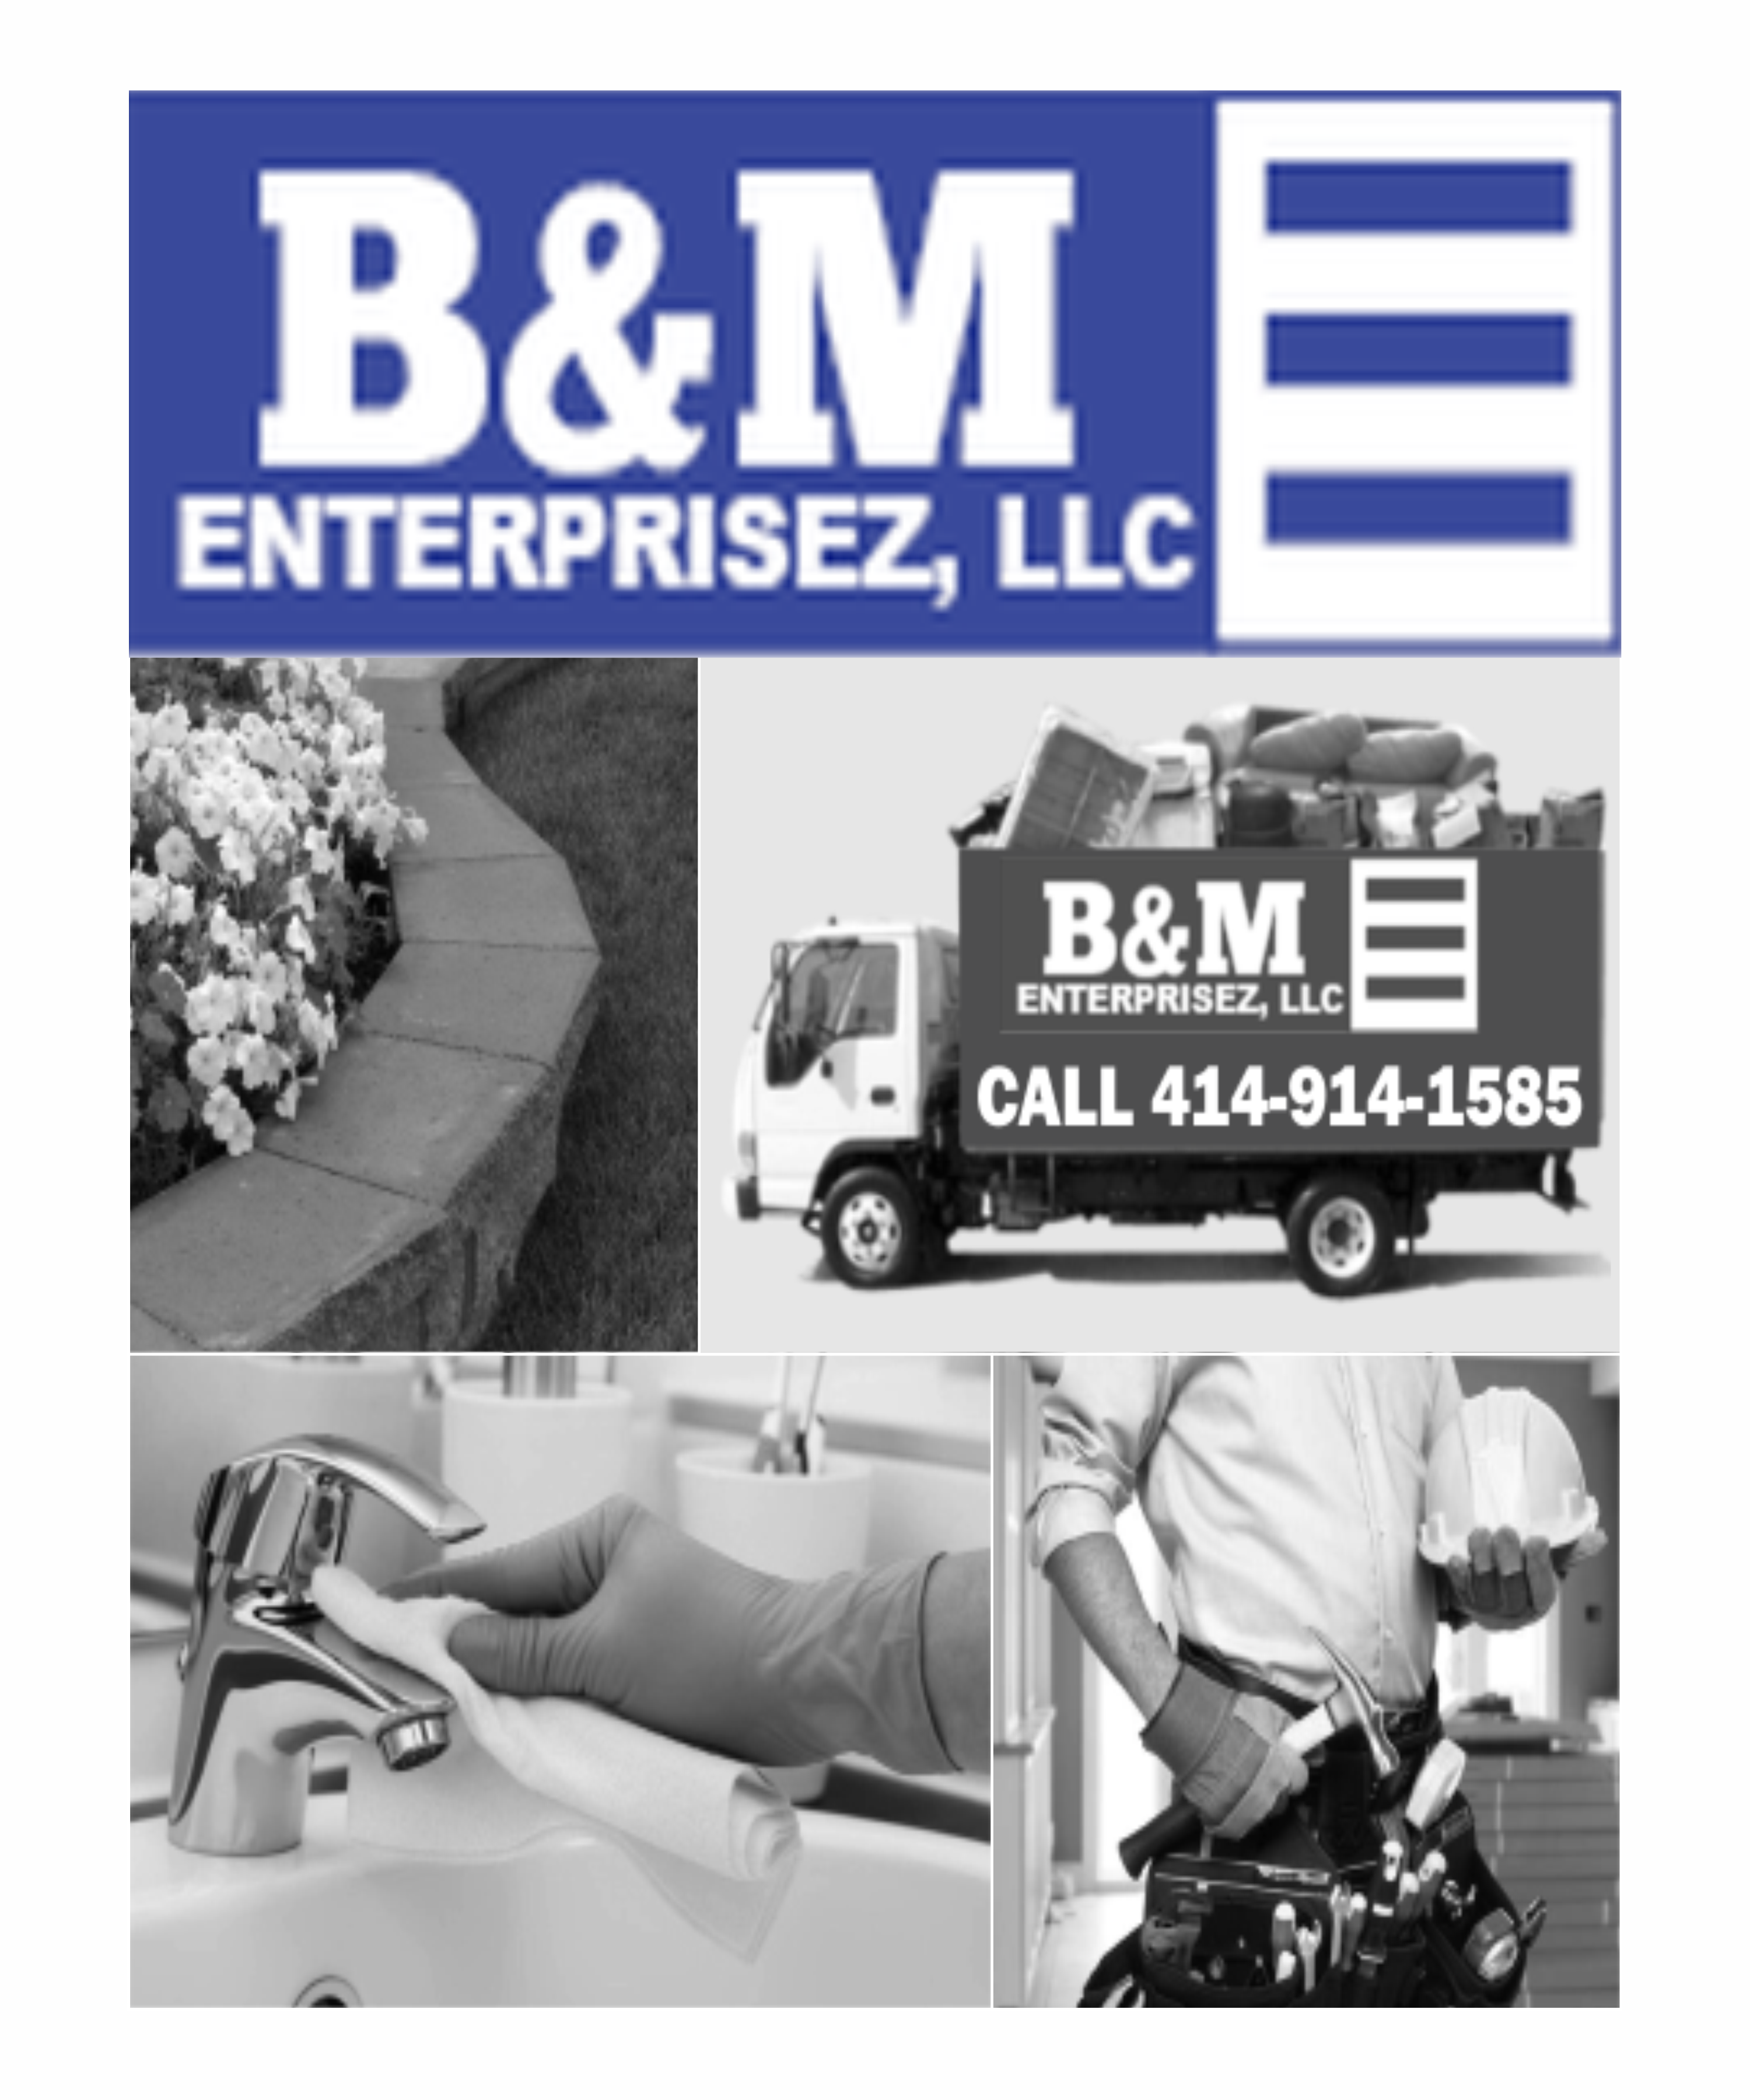 B&M Enterprisez